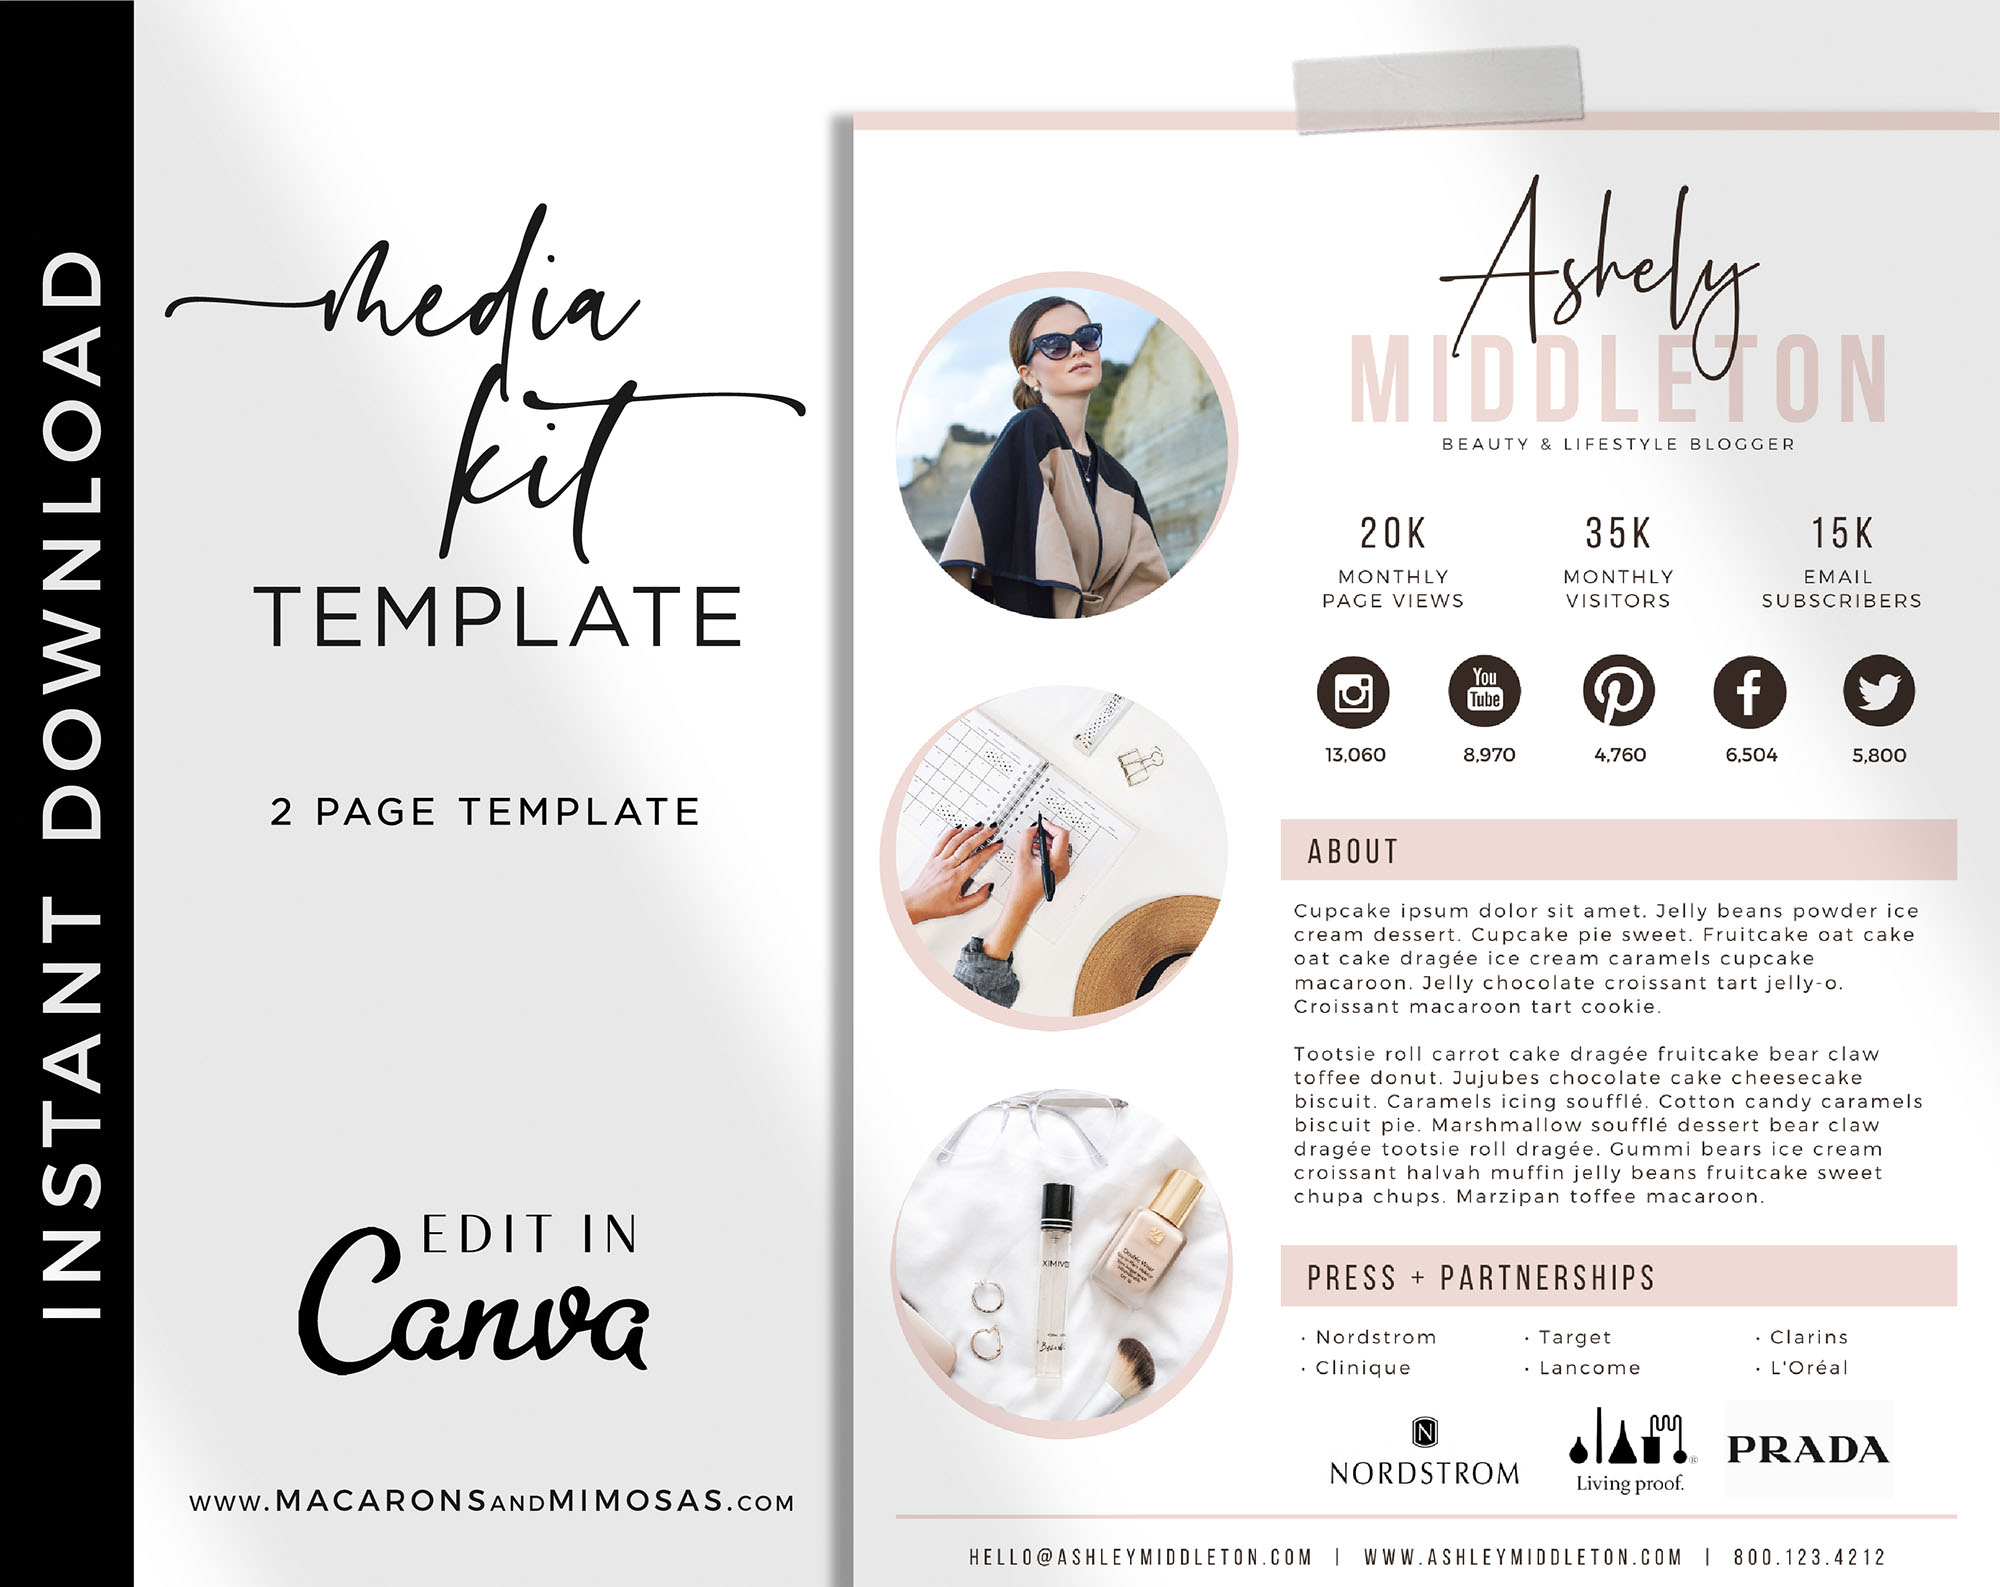 Media Kit Template for Canva, Instagram Brand Ambassador Media Kit Template, Press Kit, Pitch Kit, Blogger Template, Influencer Media Kit